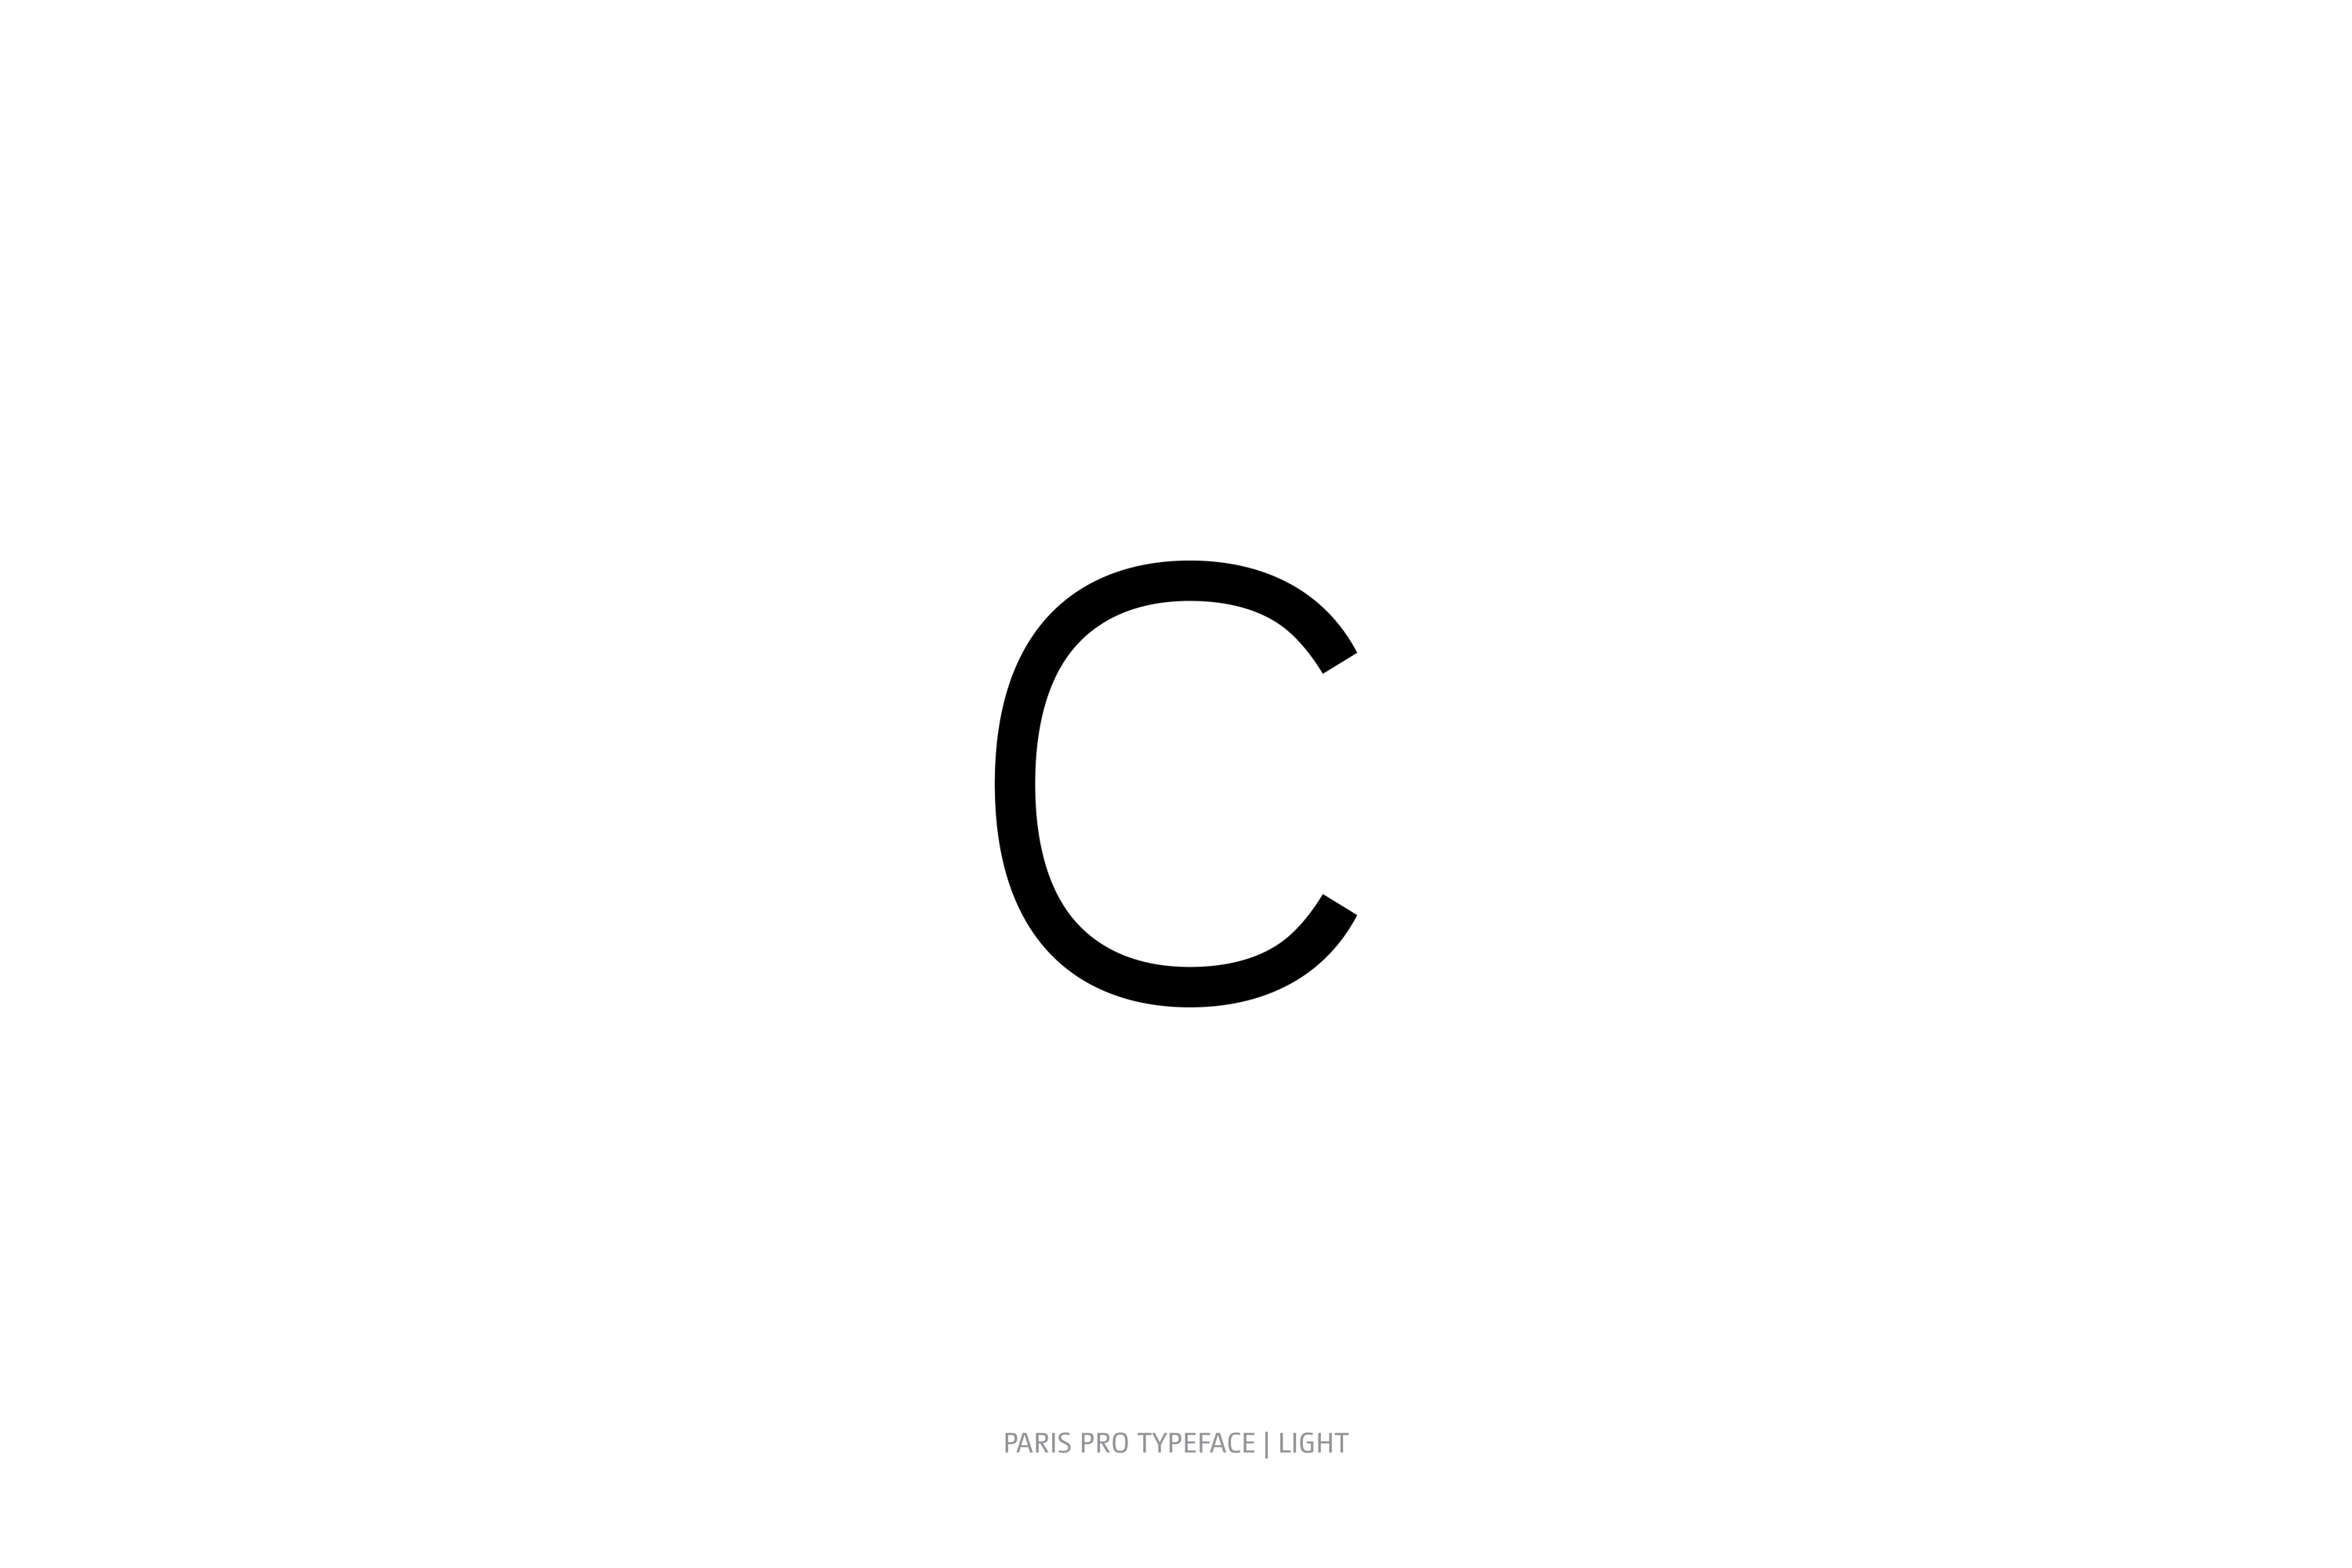 Paris Pro Typeface Light Style c